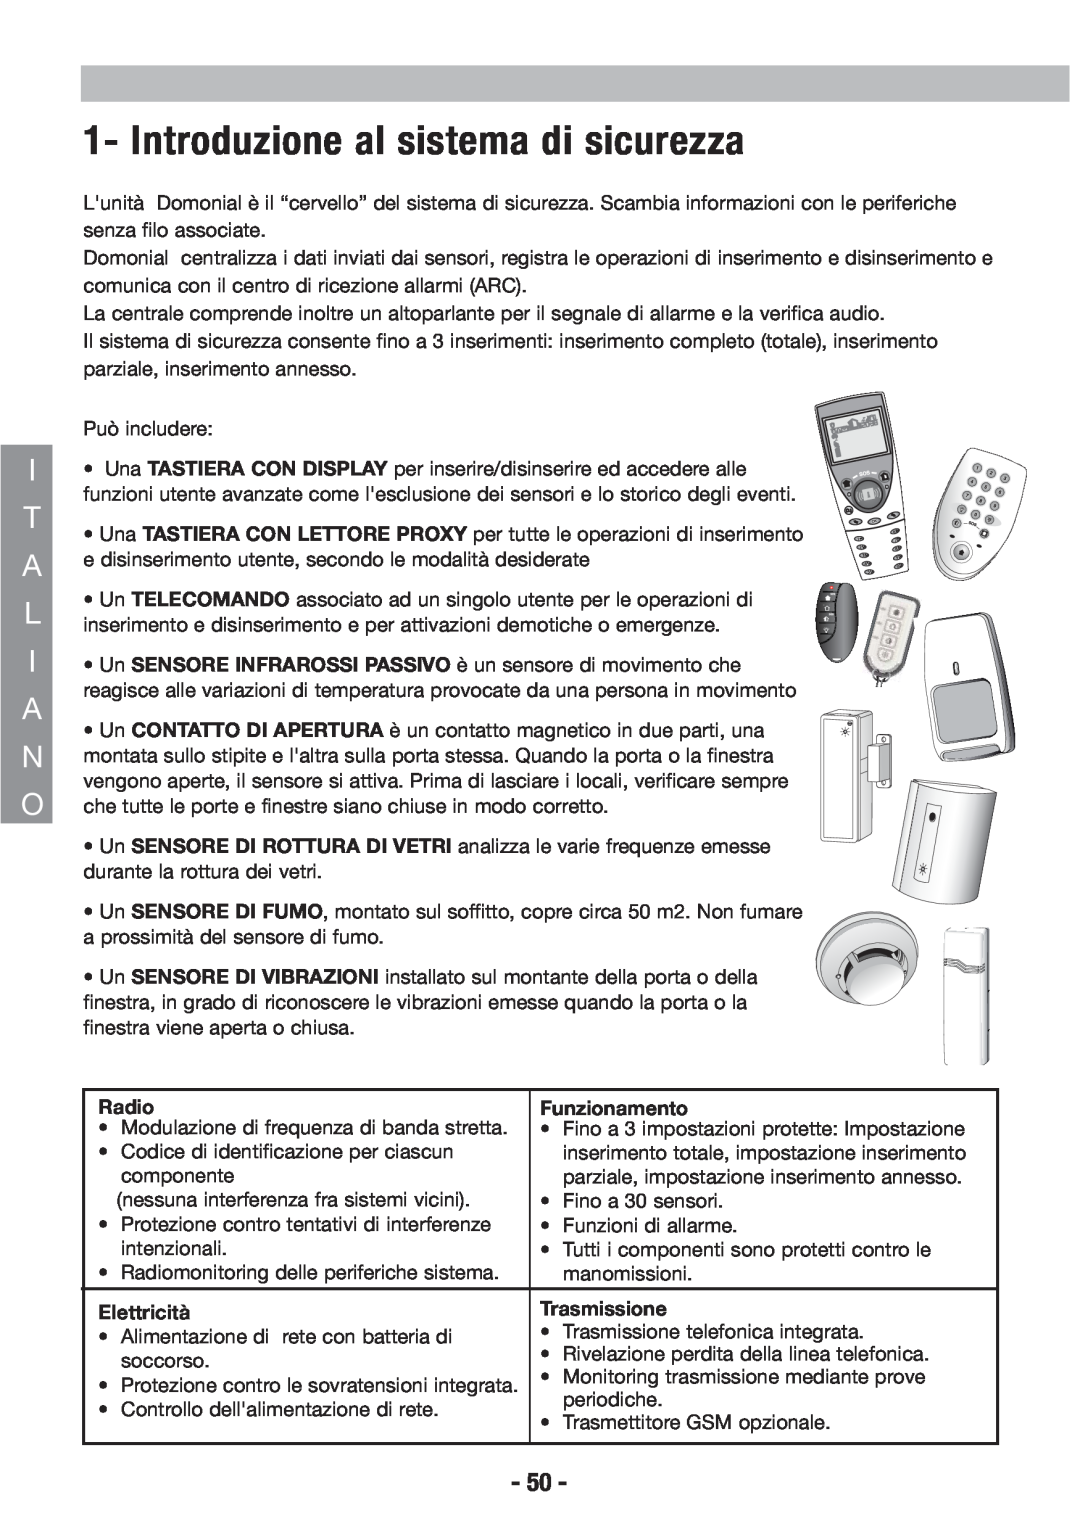 Honeywell EKZ008200B user manual Introduzione al sistema di sicurezza, Radio, Funzionamento, Elettricità, Trasmissione 